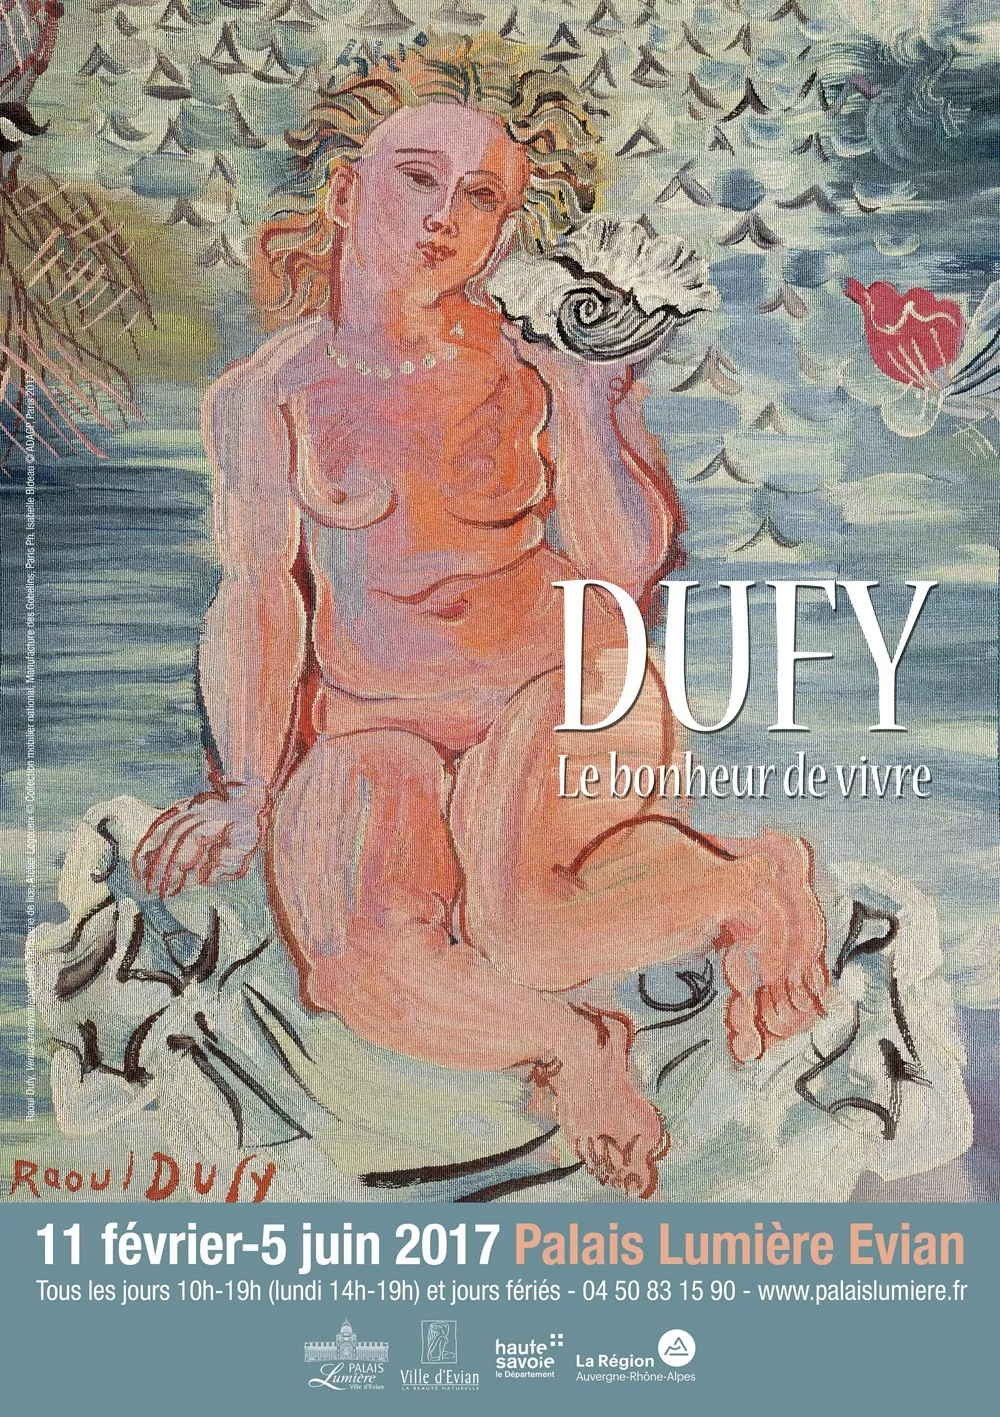 Exposition des oeuvres de Raoul Dufy "Le bonheur de vivre"